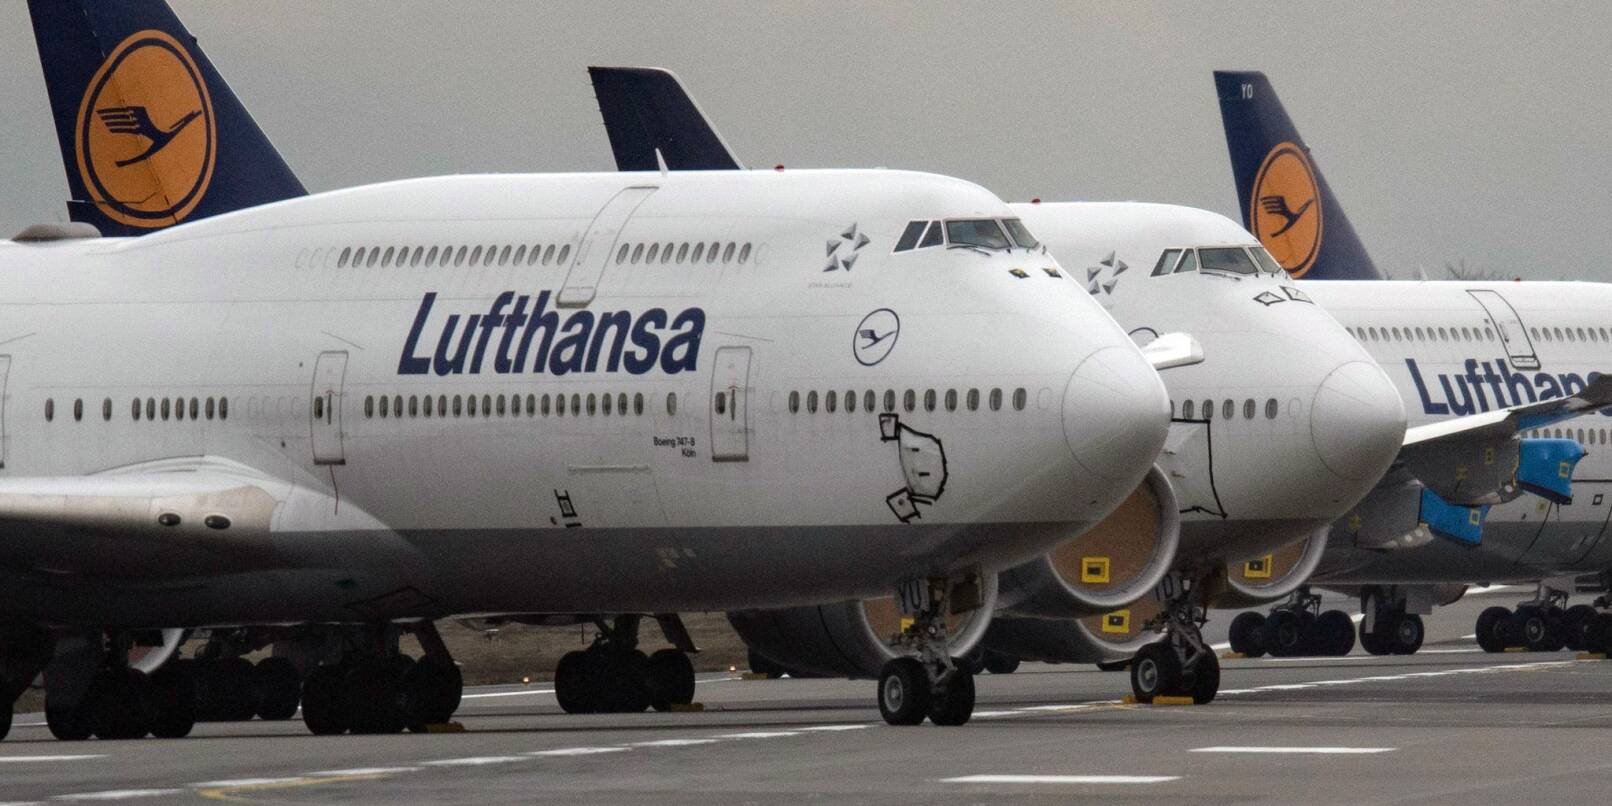 Flugzeuge von Lufthansa stehen auf einem Flughafen.